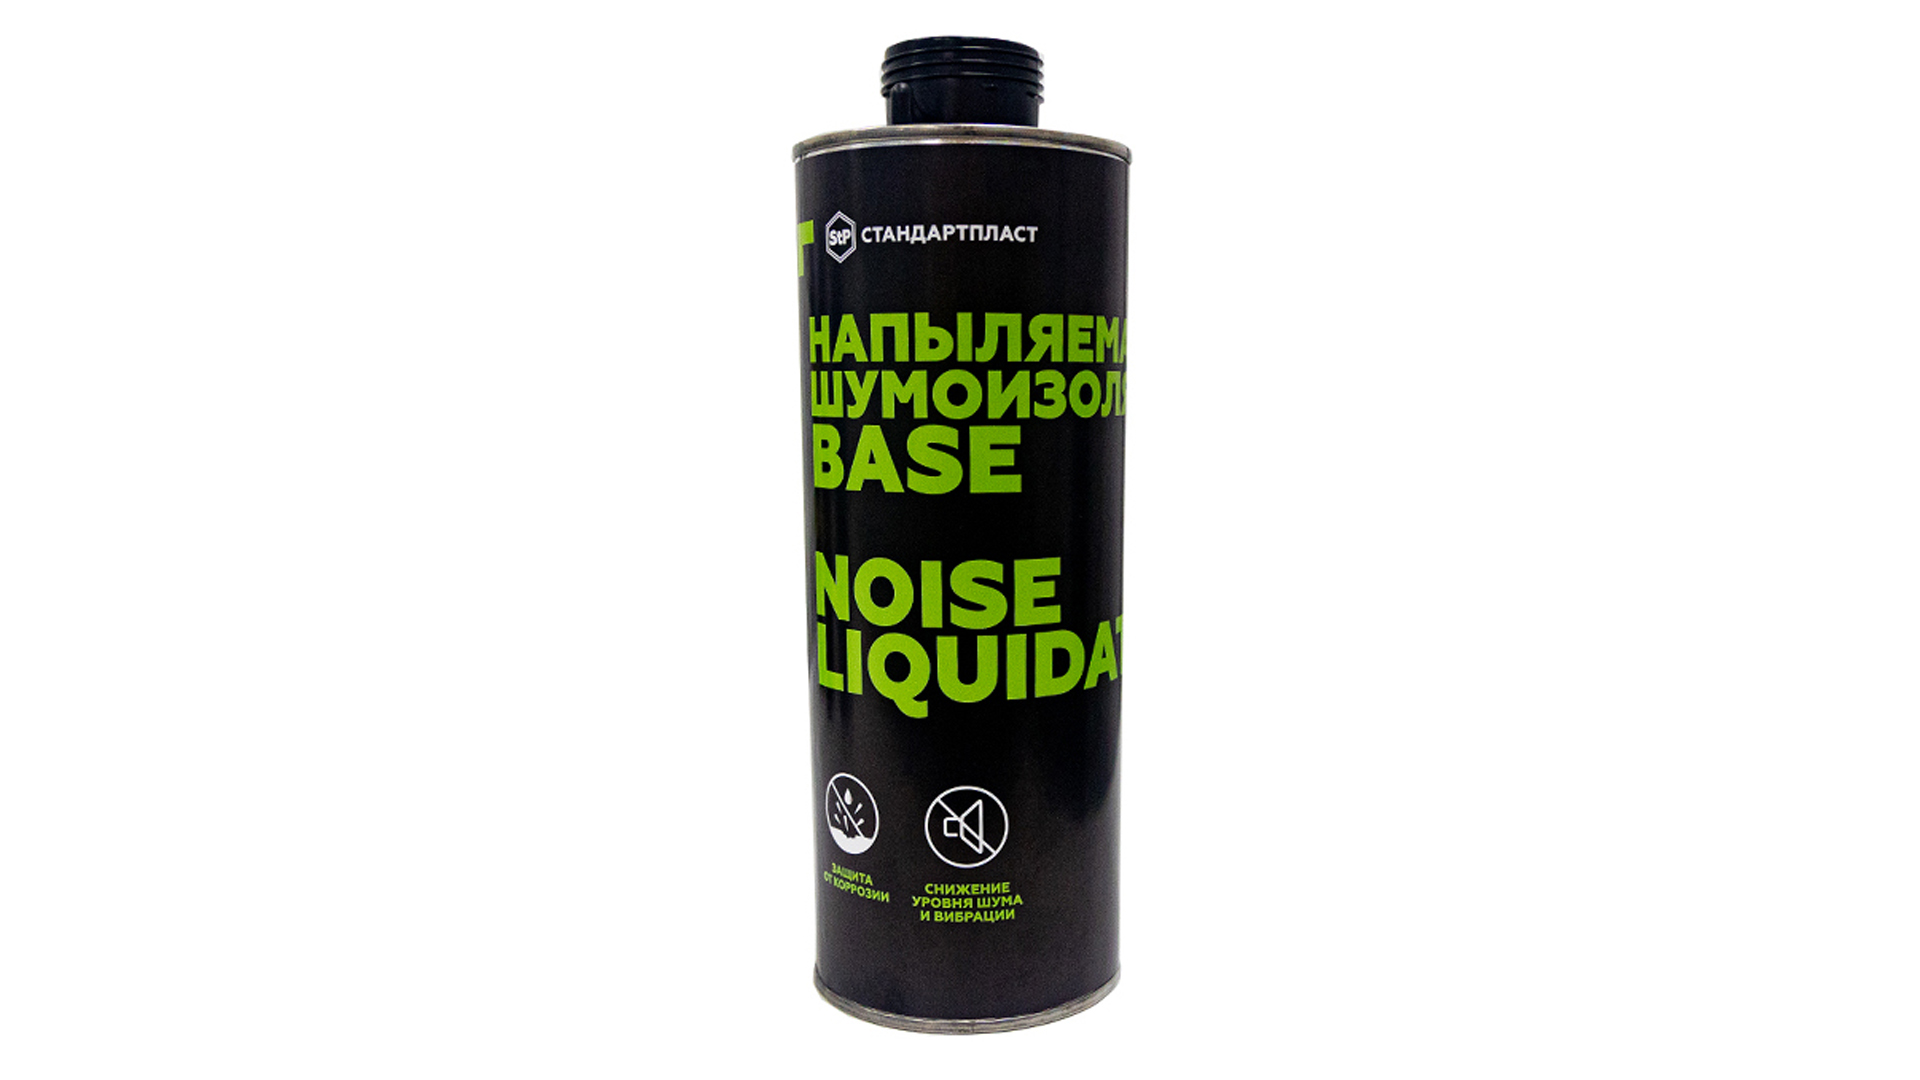 Напыляемая шумоизоляция NoiseLiquidator Base - фото